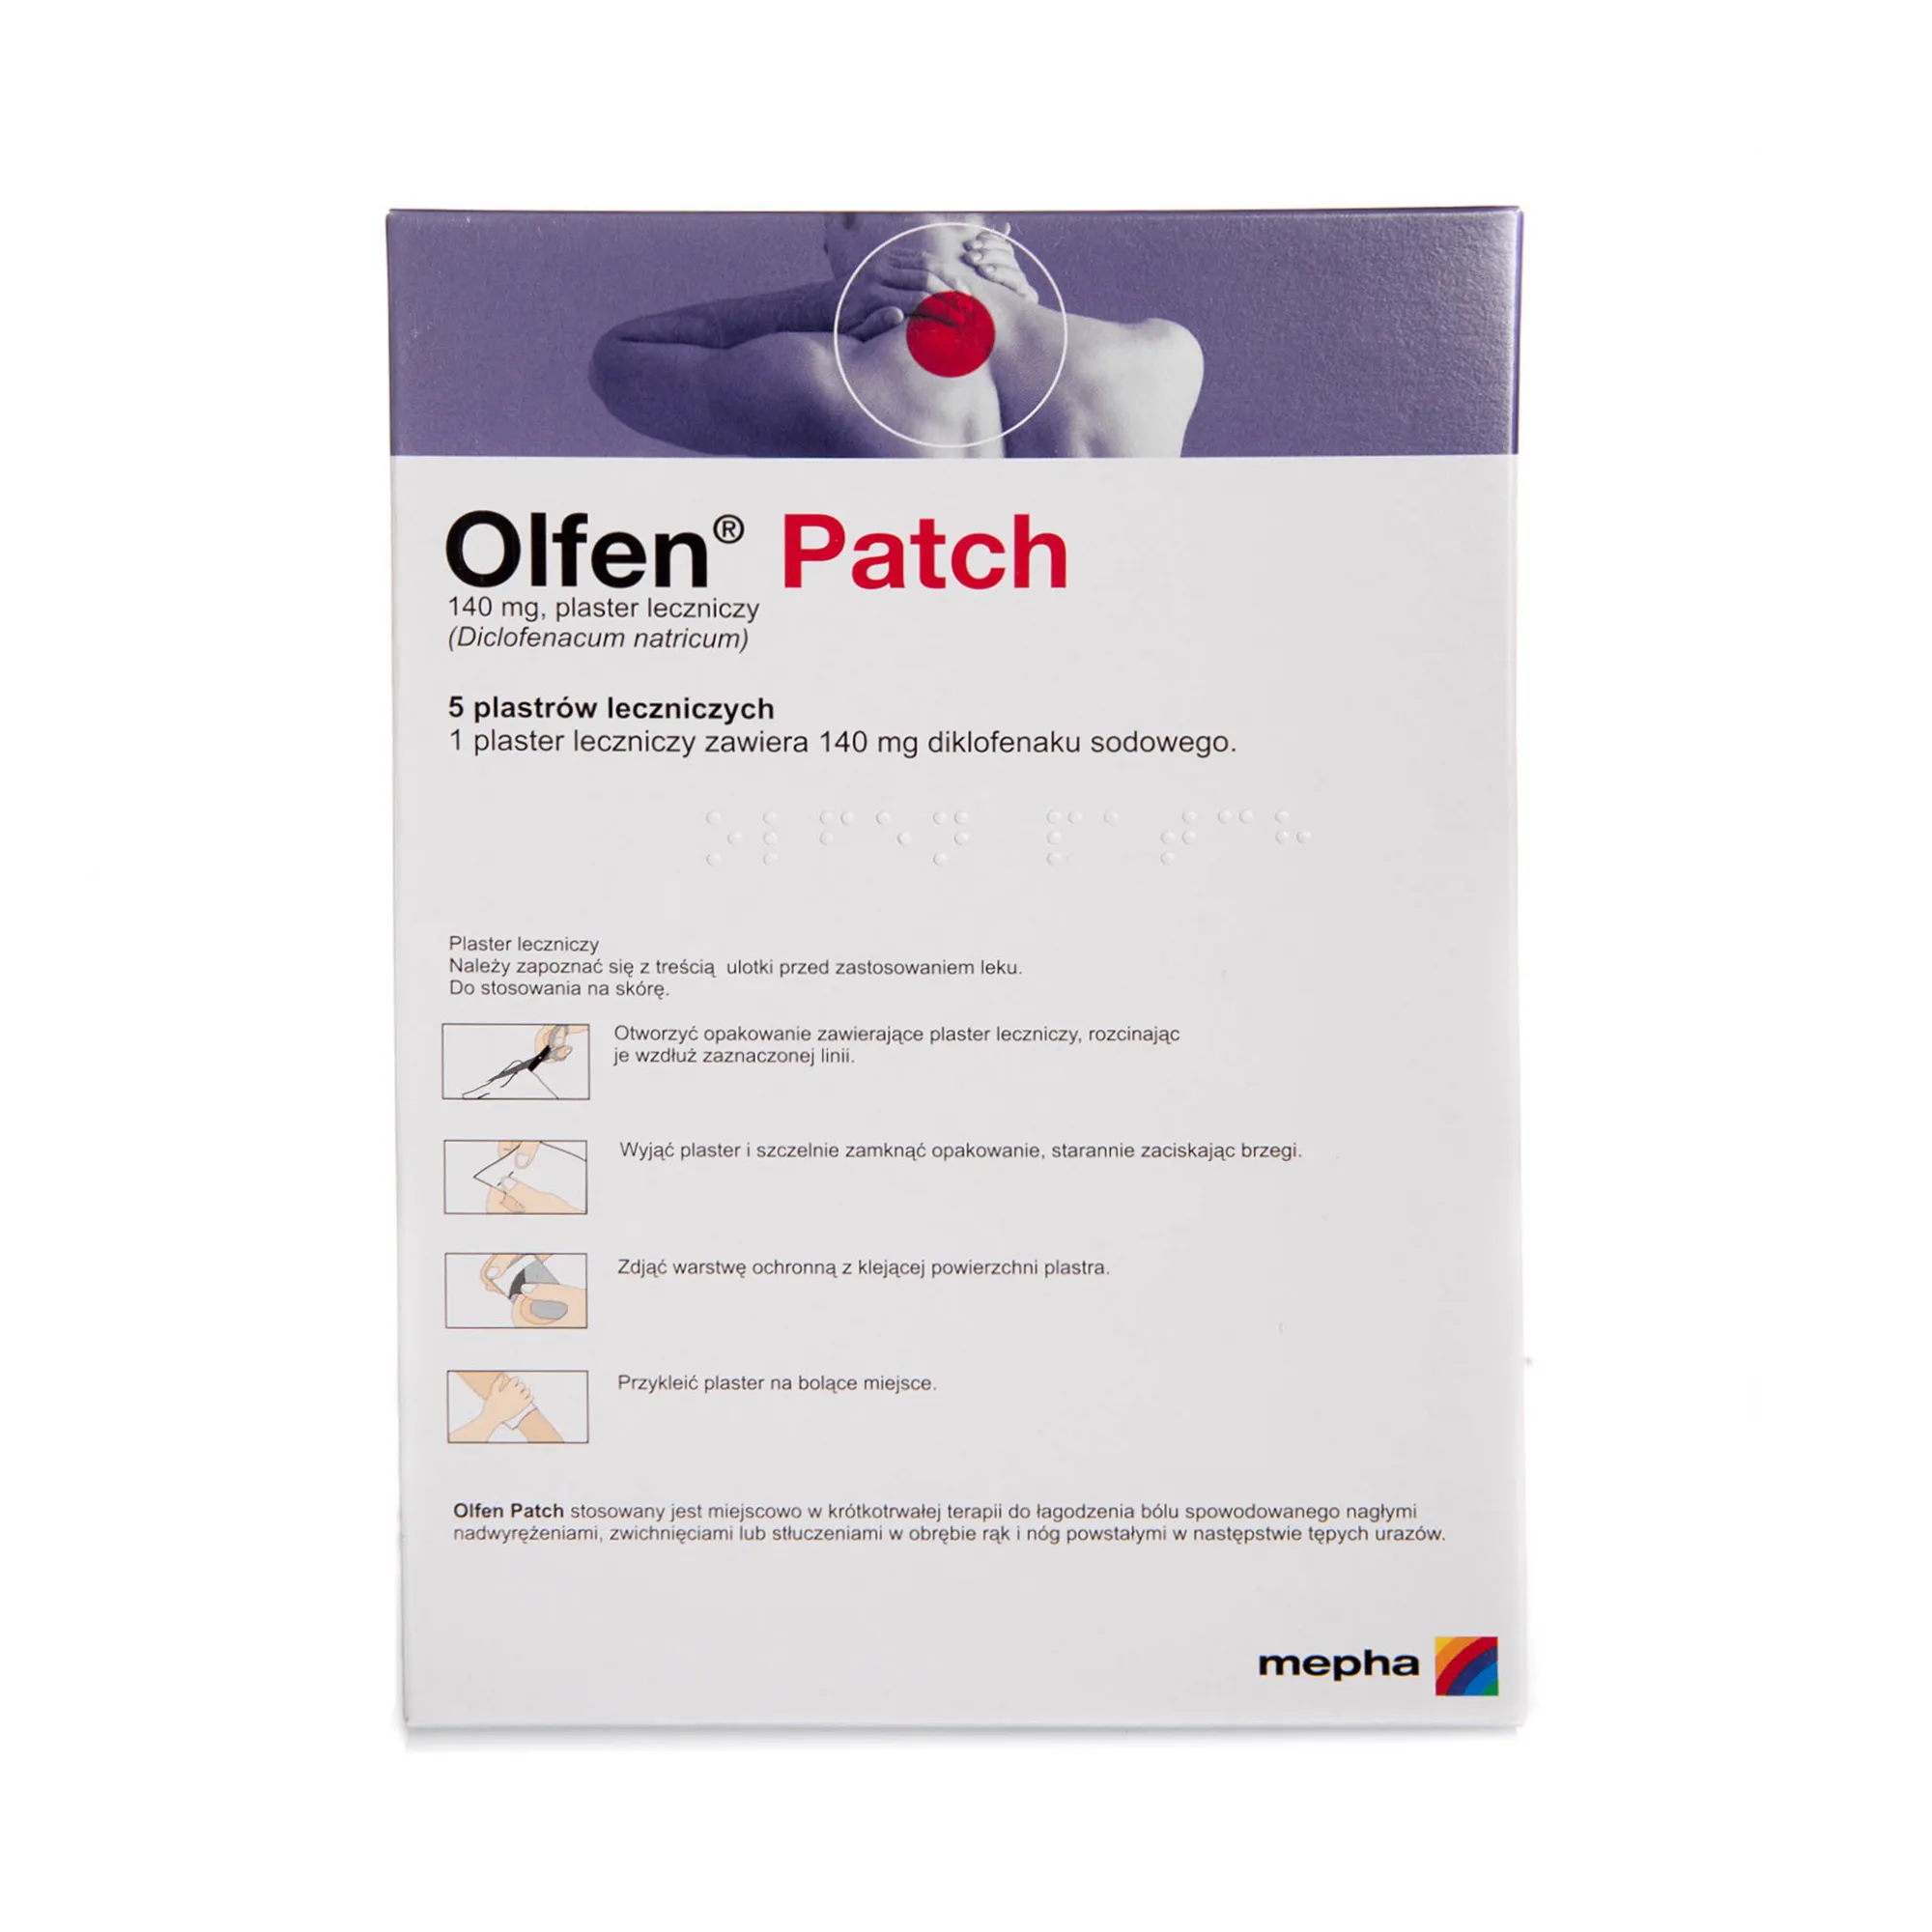 Olfen Patch, 140 mg, plaster leczniczy ( Diclofenacum natricum), 5 plastrów